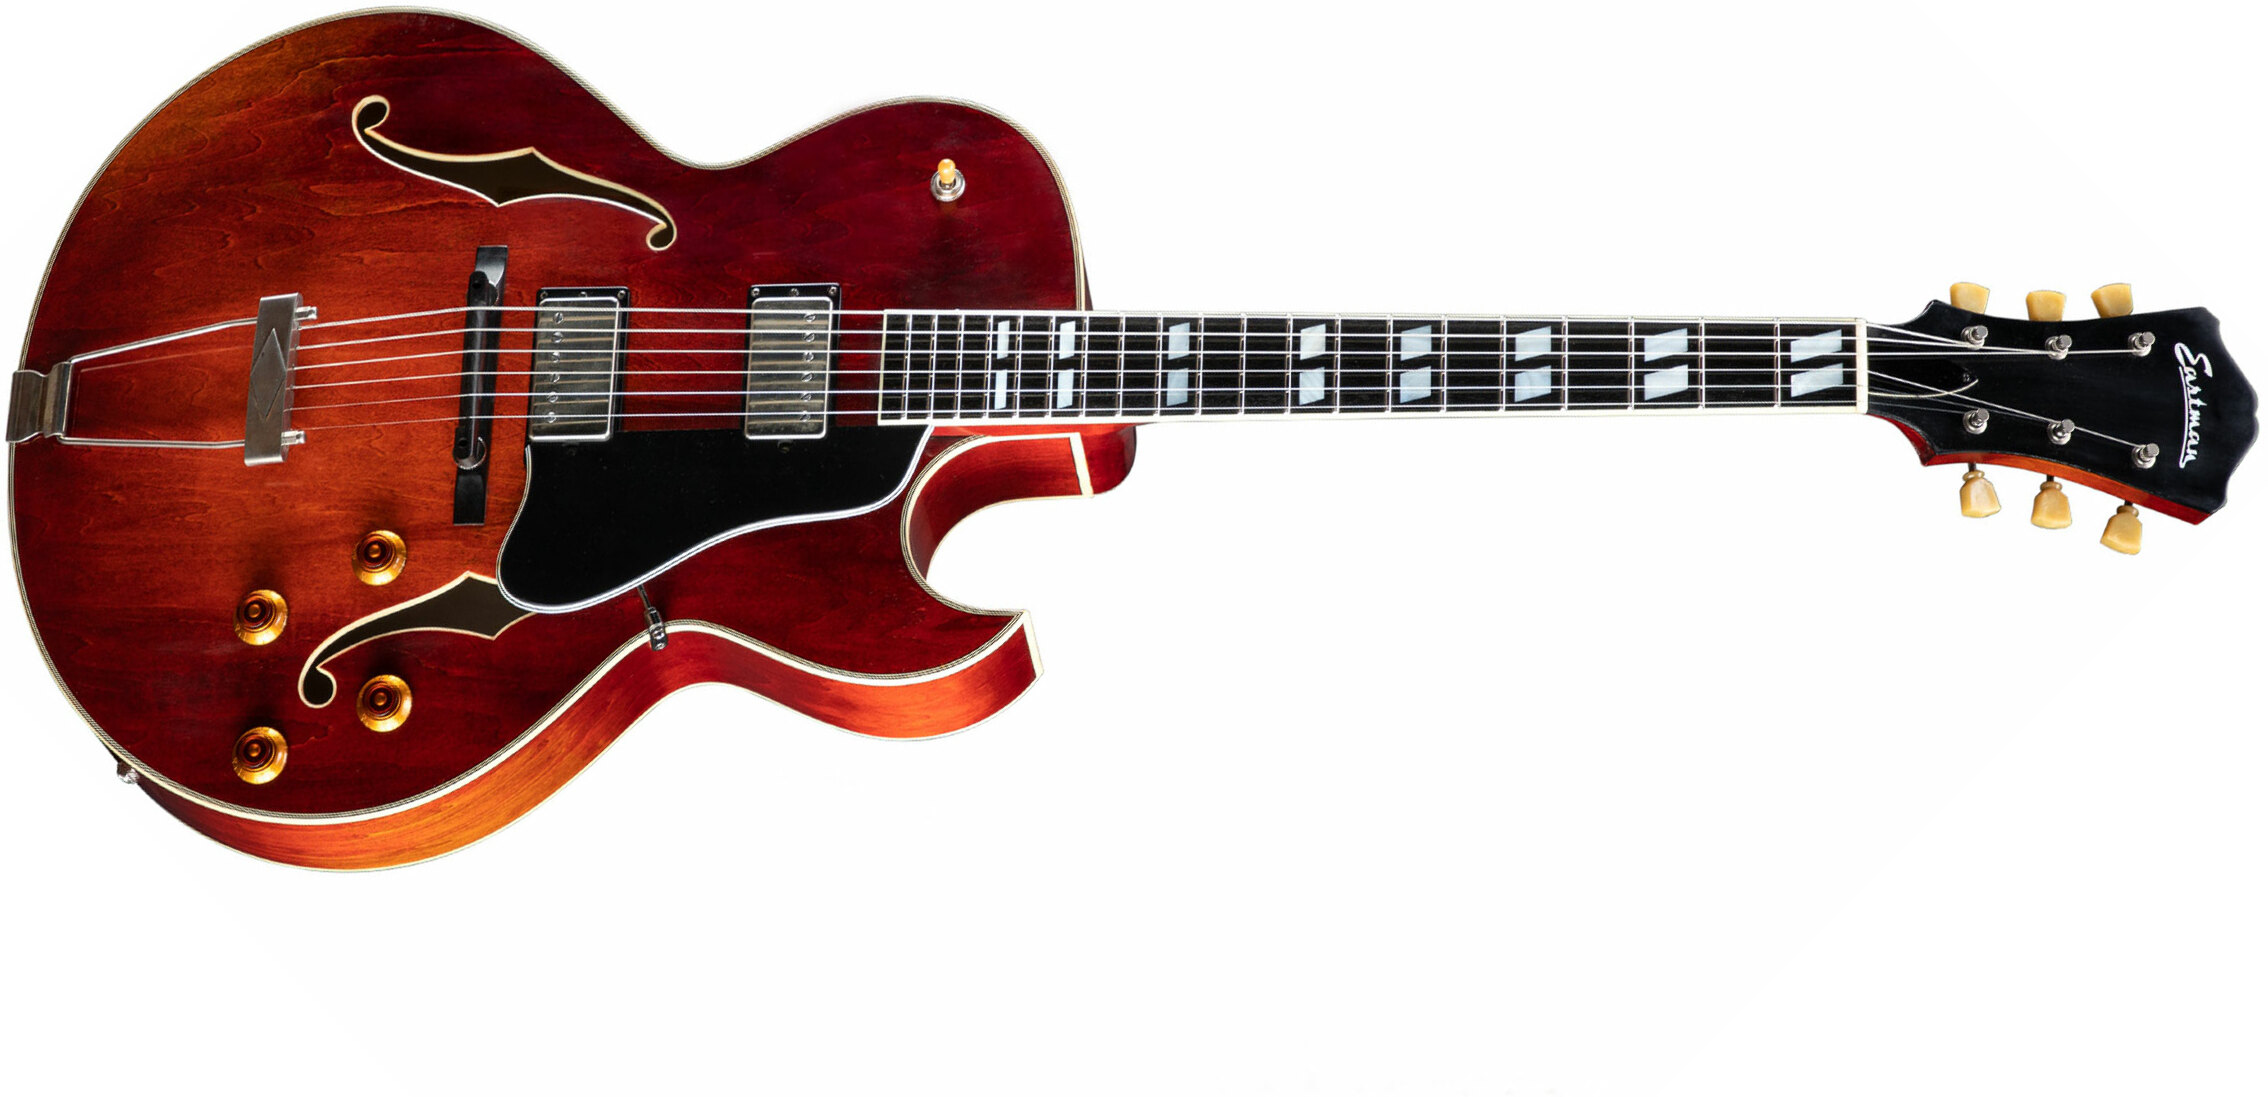 Eastman T49d Archtop Tout Erable Rw - Antique Classic - Semi-hollow electric guitar - Main picture